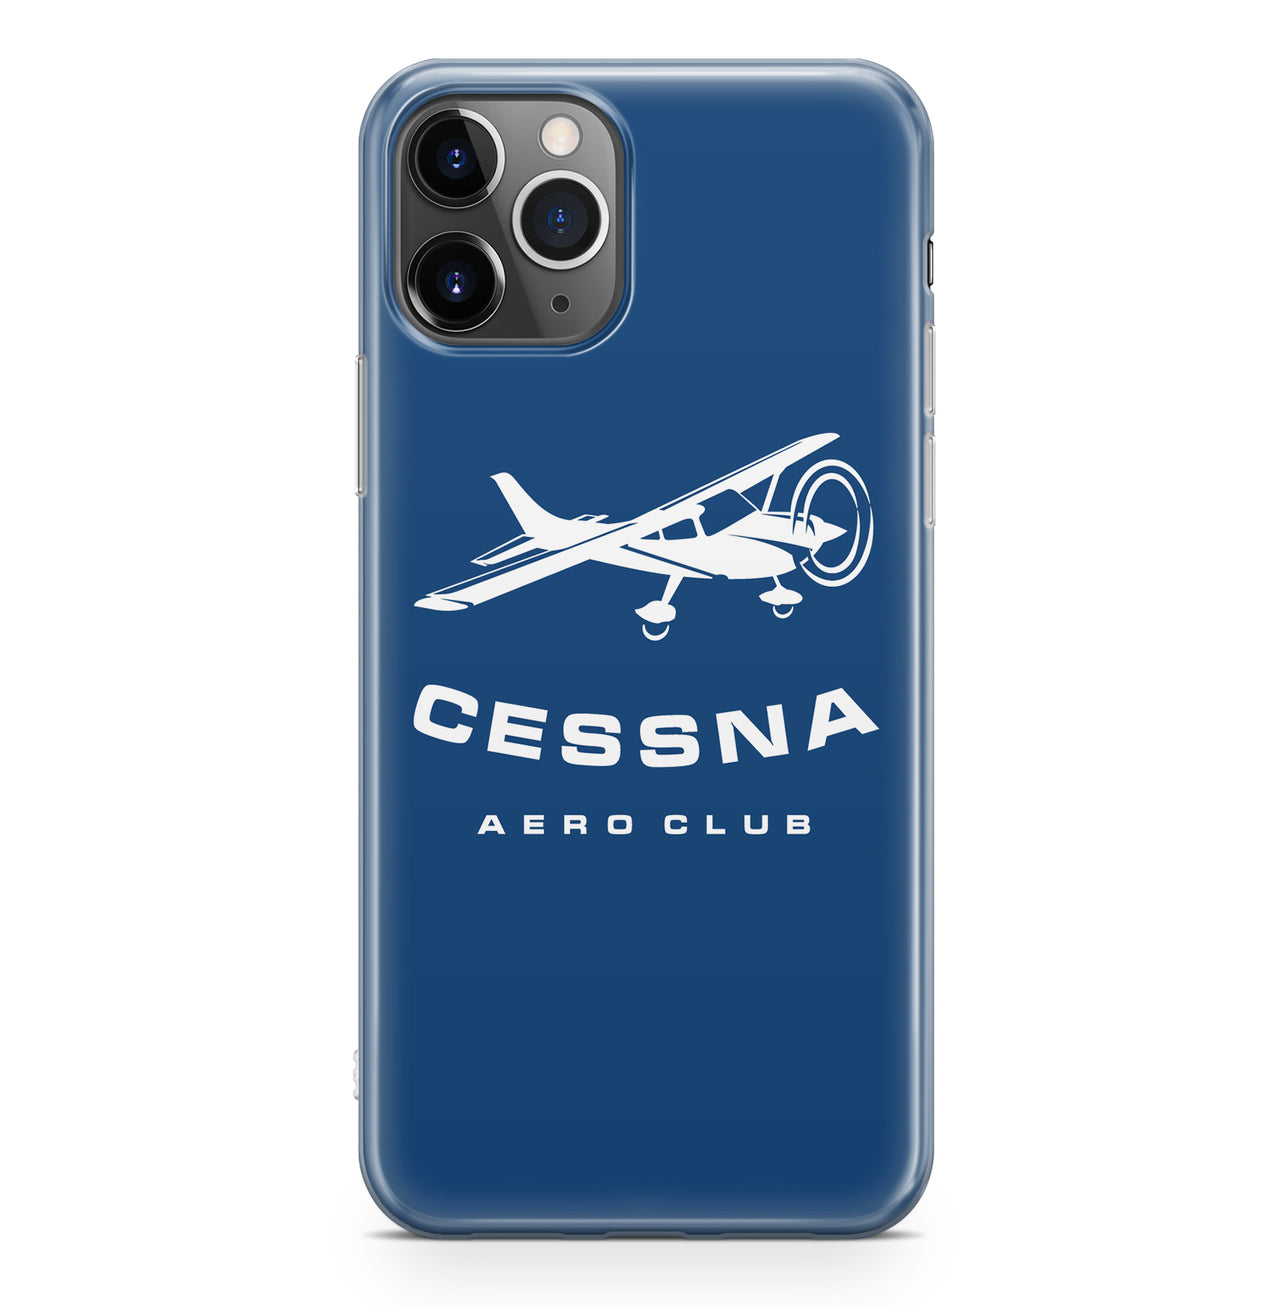 Cessna Aeroclub Designed iPhone Cases